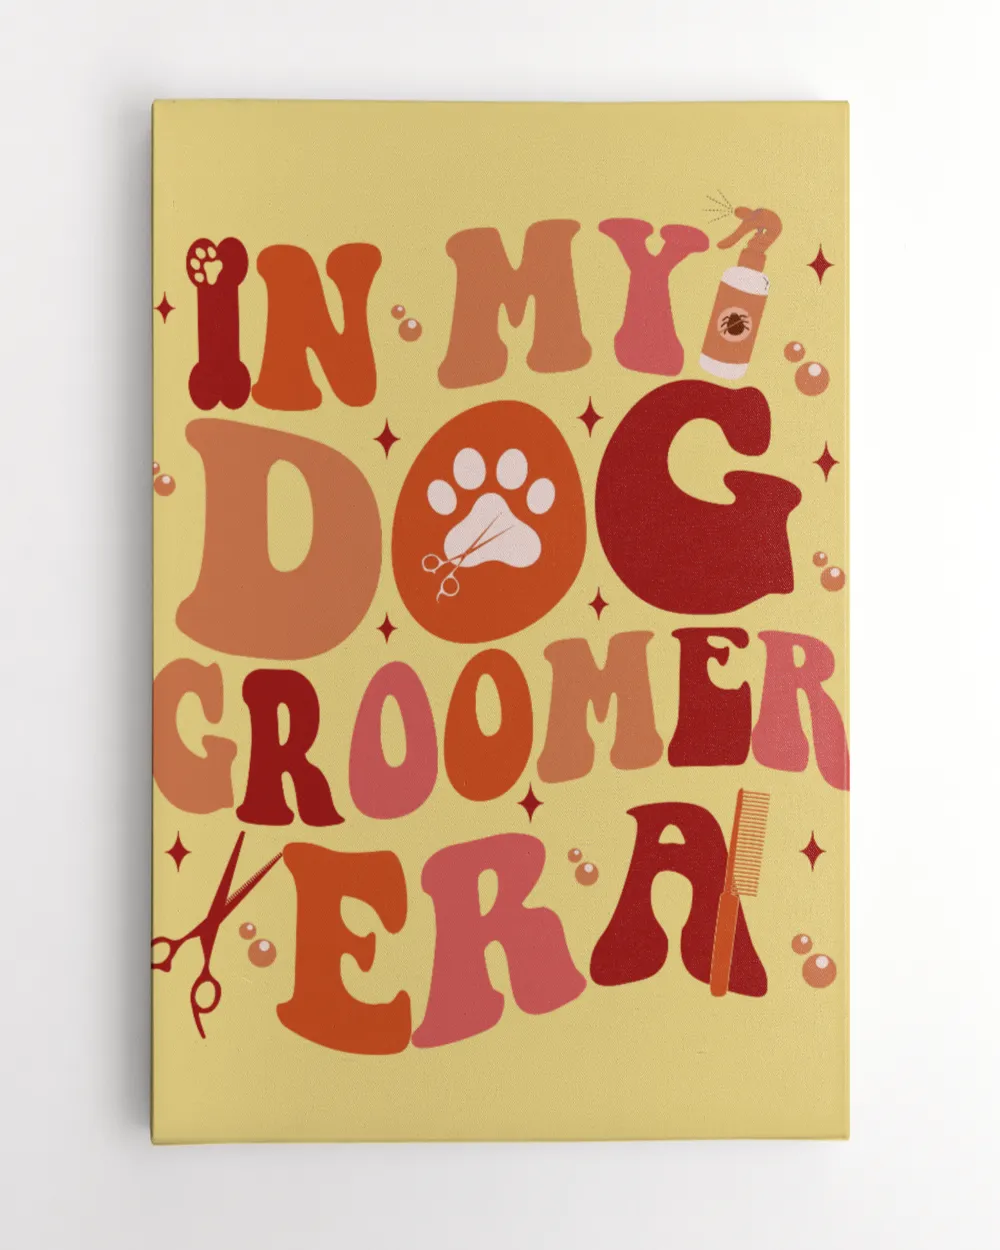 In My Dog Groomer Era Sweatshirt, Custom Dog Groomer Sweatshirt, Pet Groomer Shirt, Personalized Dog Groomer Sweatshirt, Dog Lover Gift